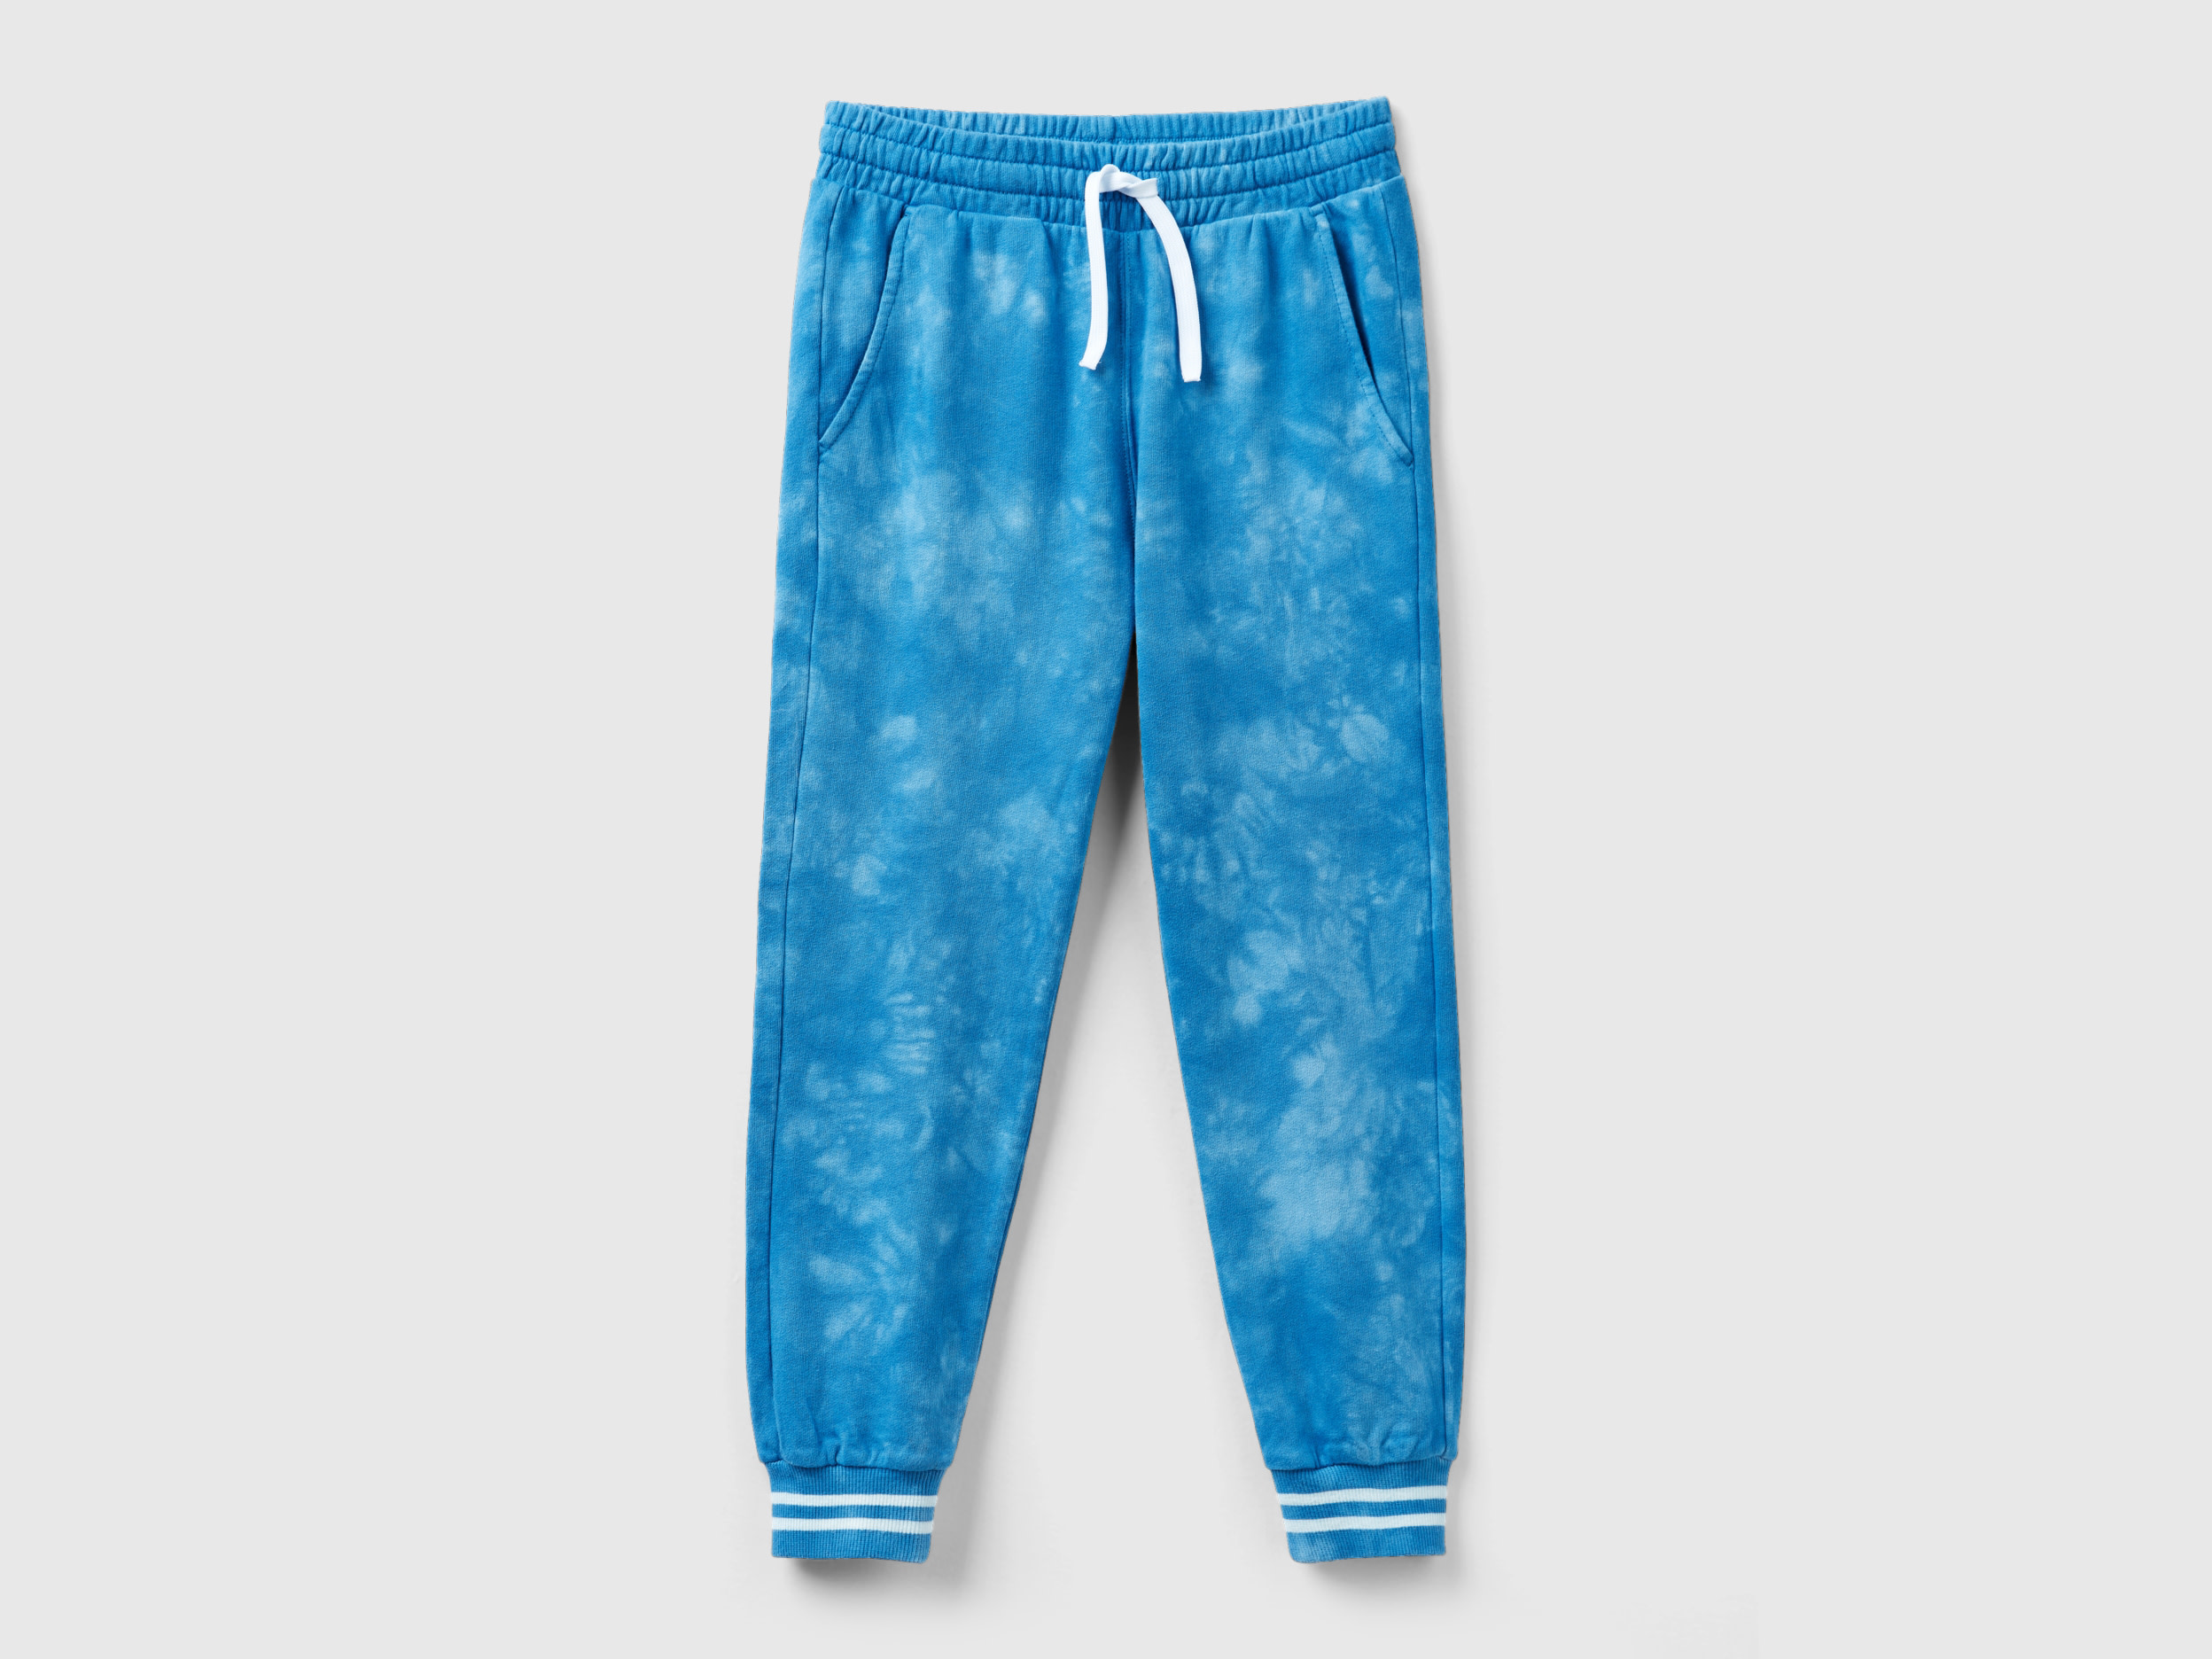 Benetton, Tie-dye Sweatpants, size S, Light Blue, Kids